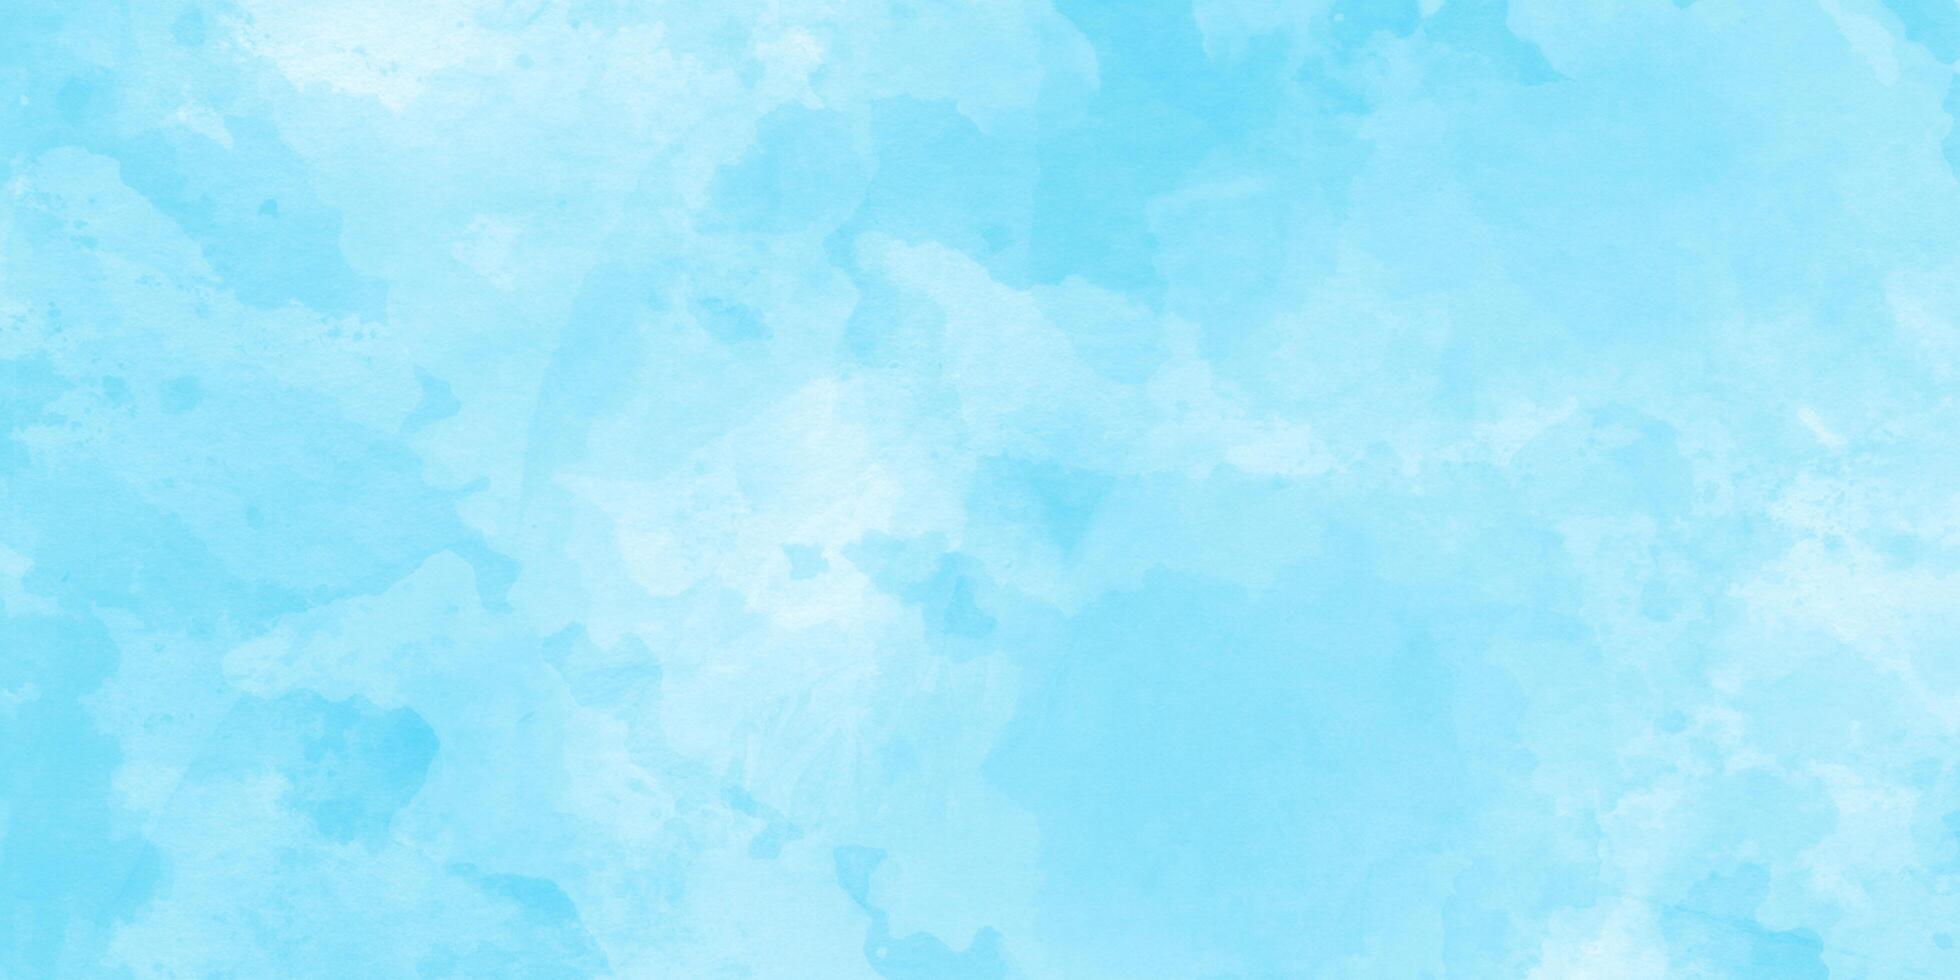 abstrakt pastell Färg vattenfärg målning mjuk texturerad på våt vit papper, mjuk blå vattenfärg stänk stroke textur, levande blå vattenfärg måla med stänk, himmel moln med vattenfärg på blå. foto